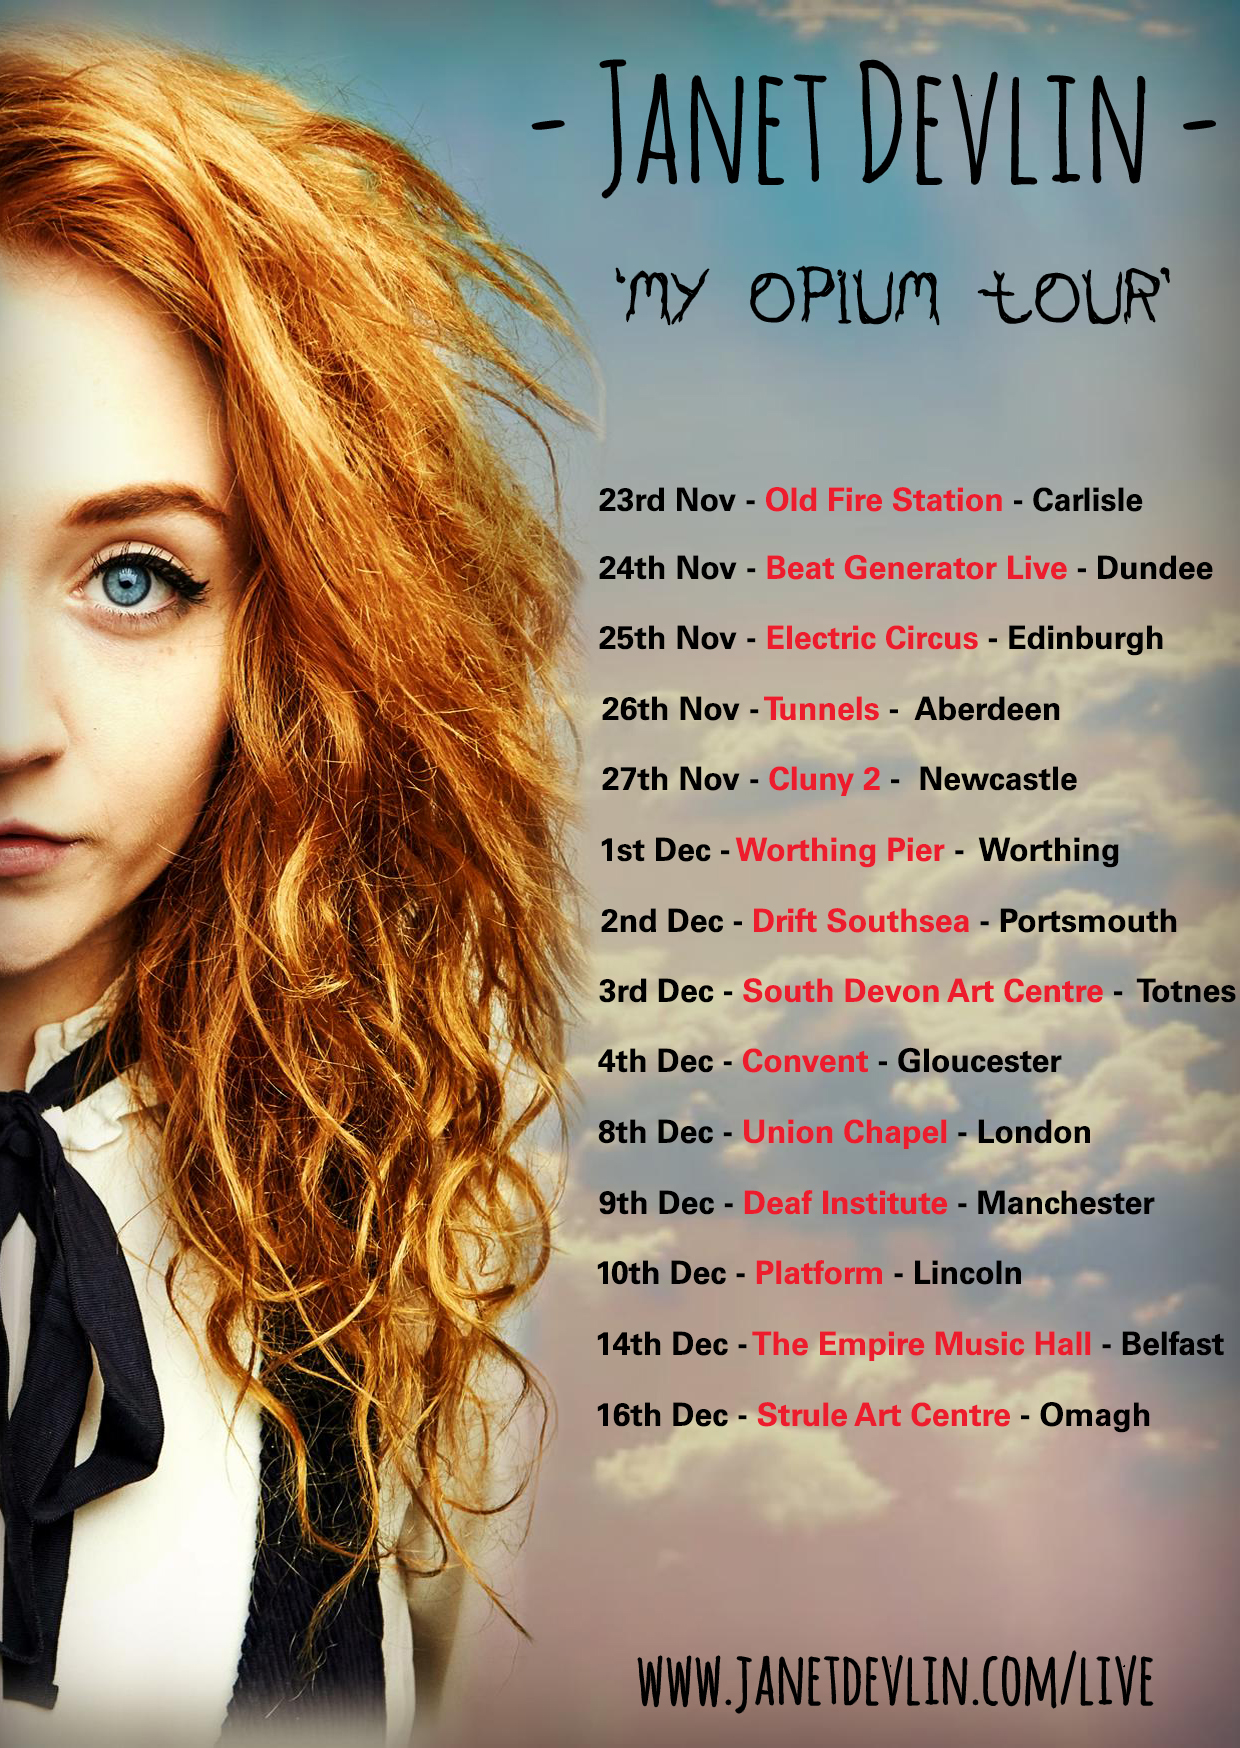 Janet Devlin Announces 'My Opium' Tour Dates